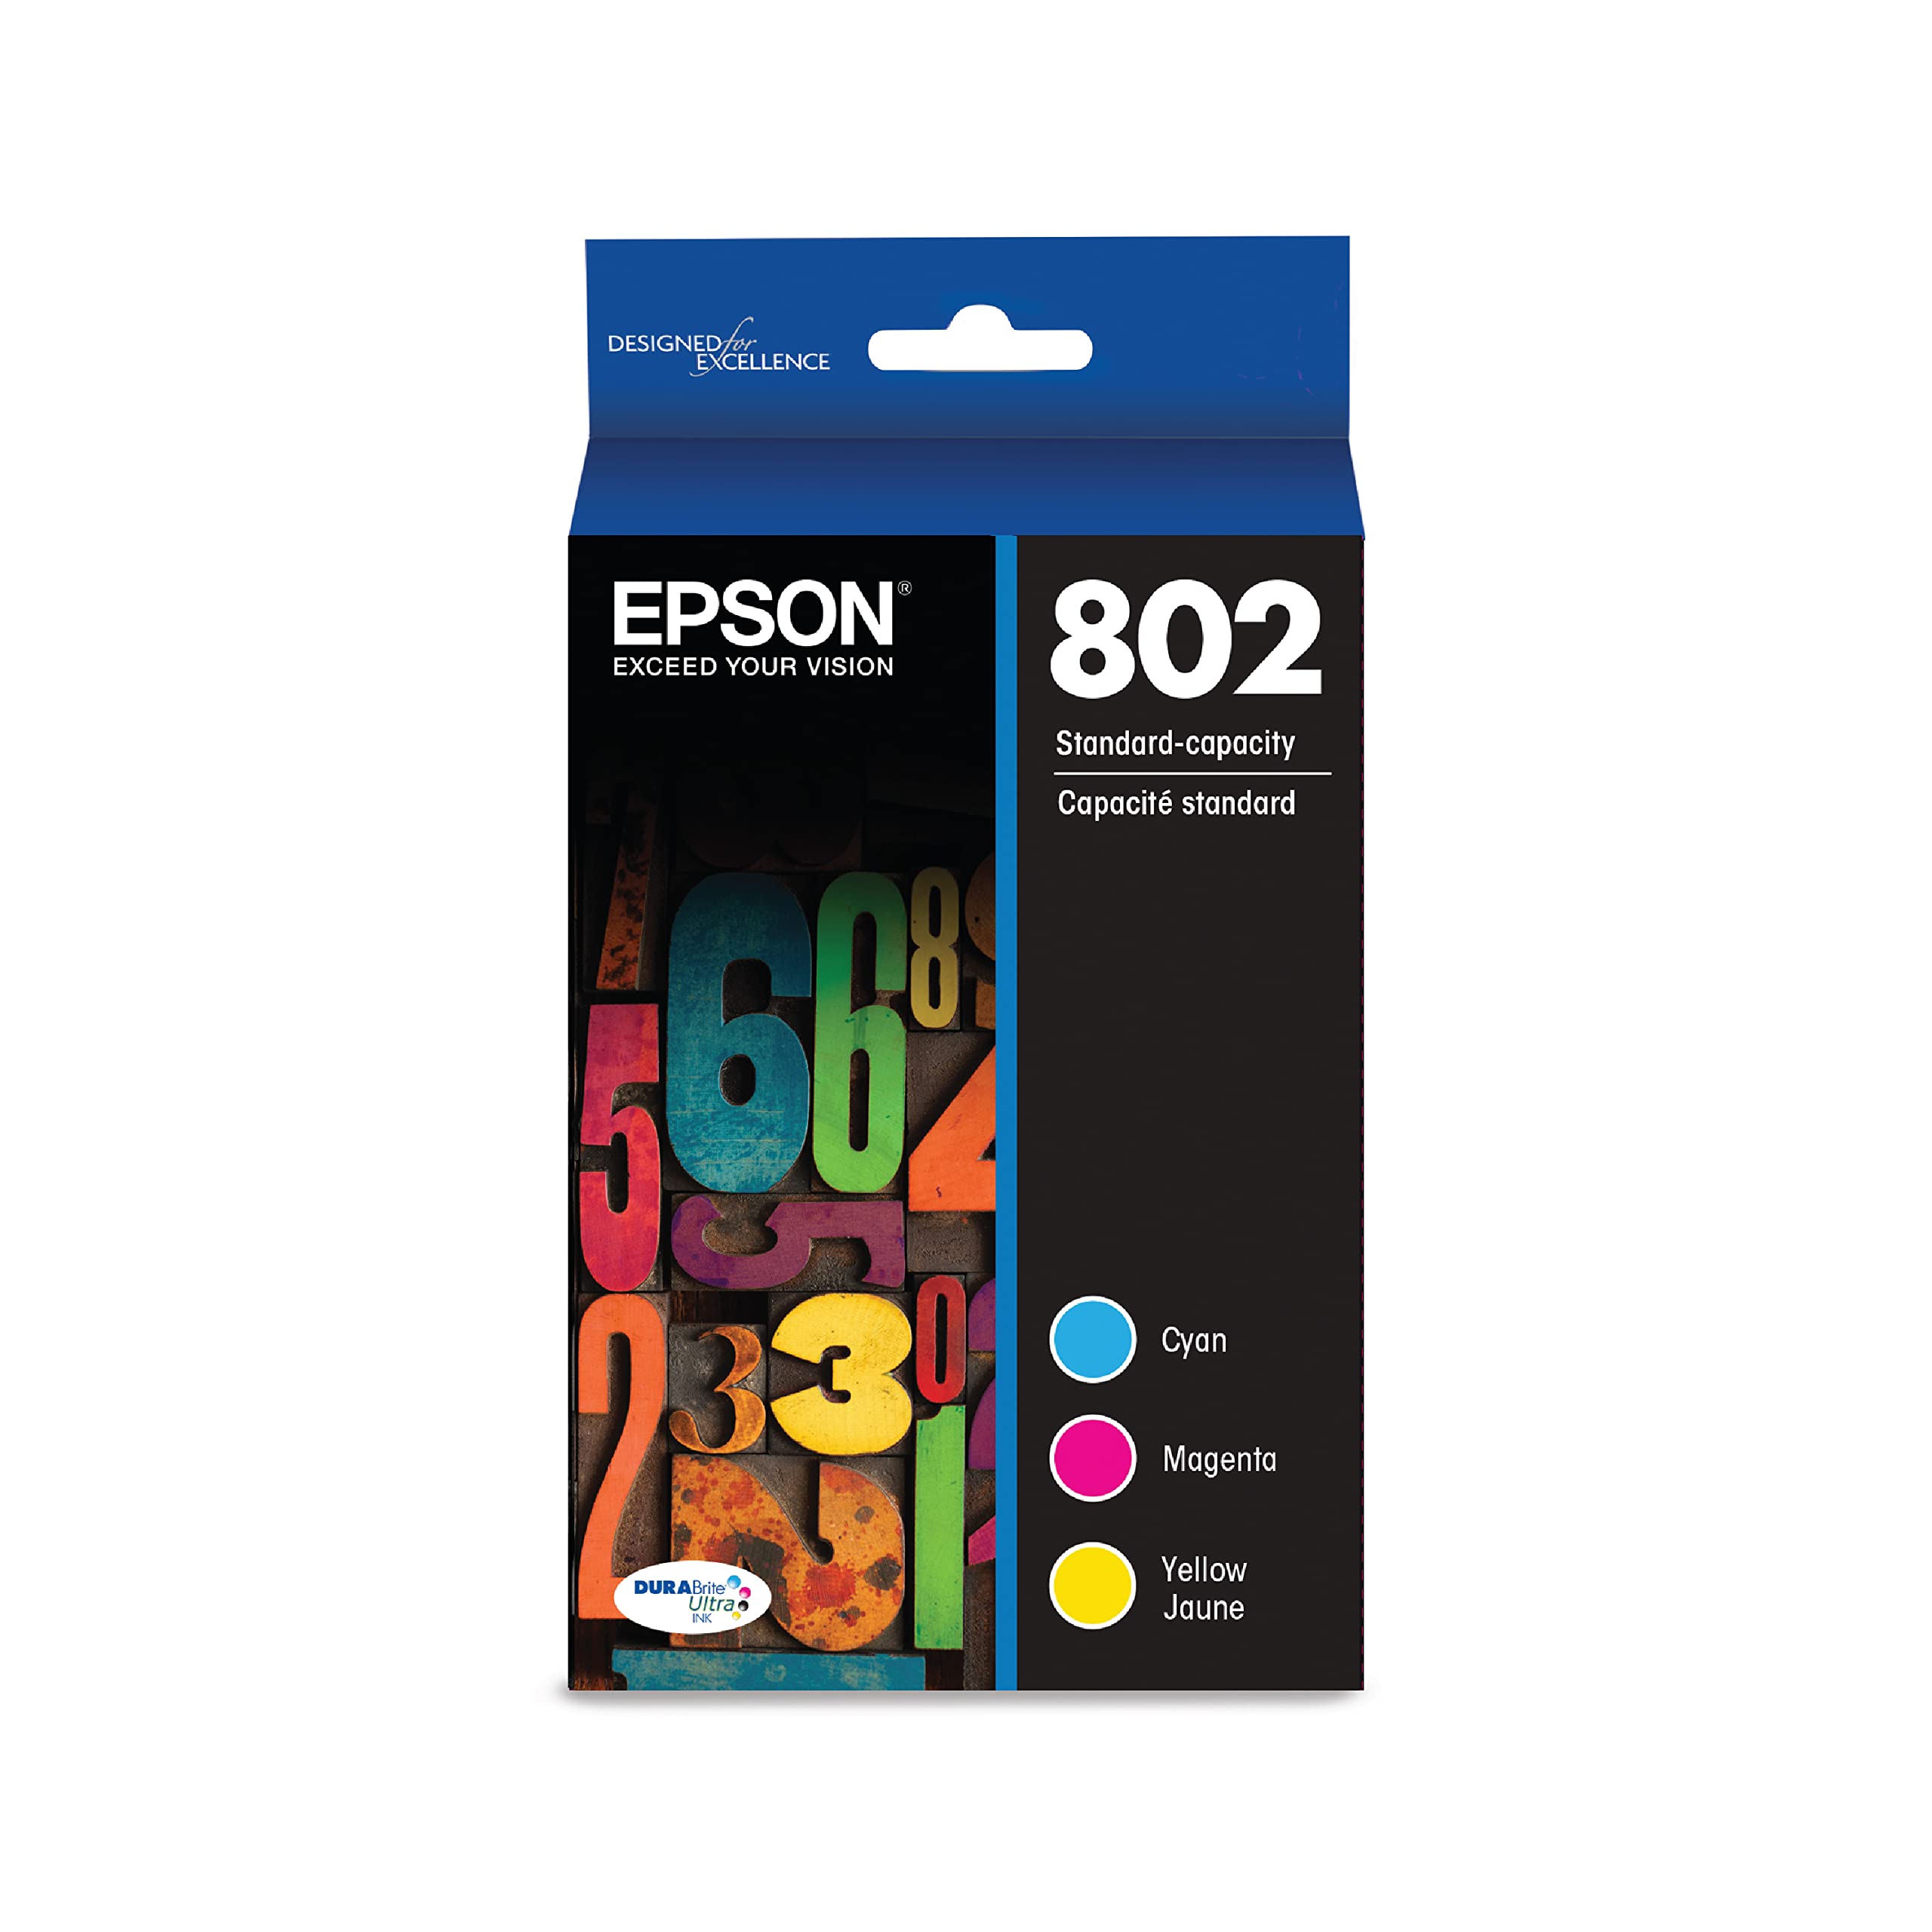  Epson चुनिंदा वर्कफोर्स प्रो प्रिंटर्स के लिए T802 DURABrite Ultra -इंक स्टैंडर्ड कैपेसिटी...